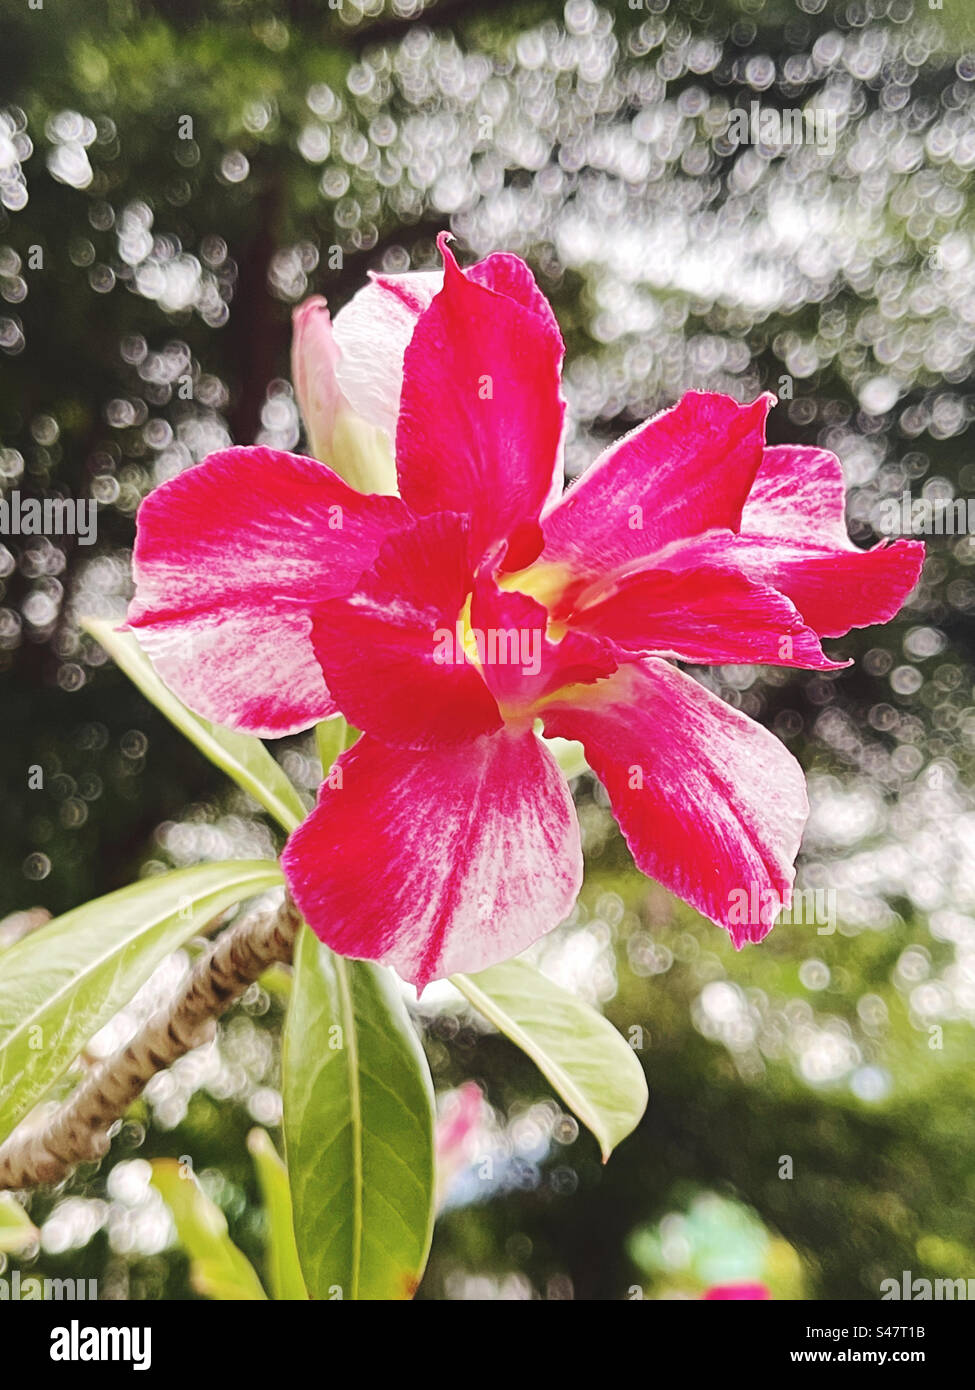 Adenium est le nom d'une plante aux belles fleurs colorées. C'est une plante facile à cultiver et à entretenir. Tolère des conditions très sèches. Banque D'Images